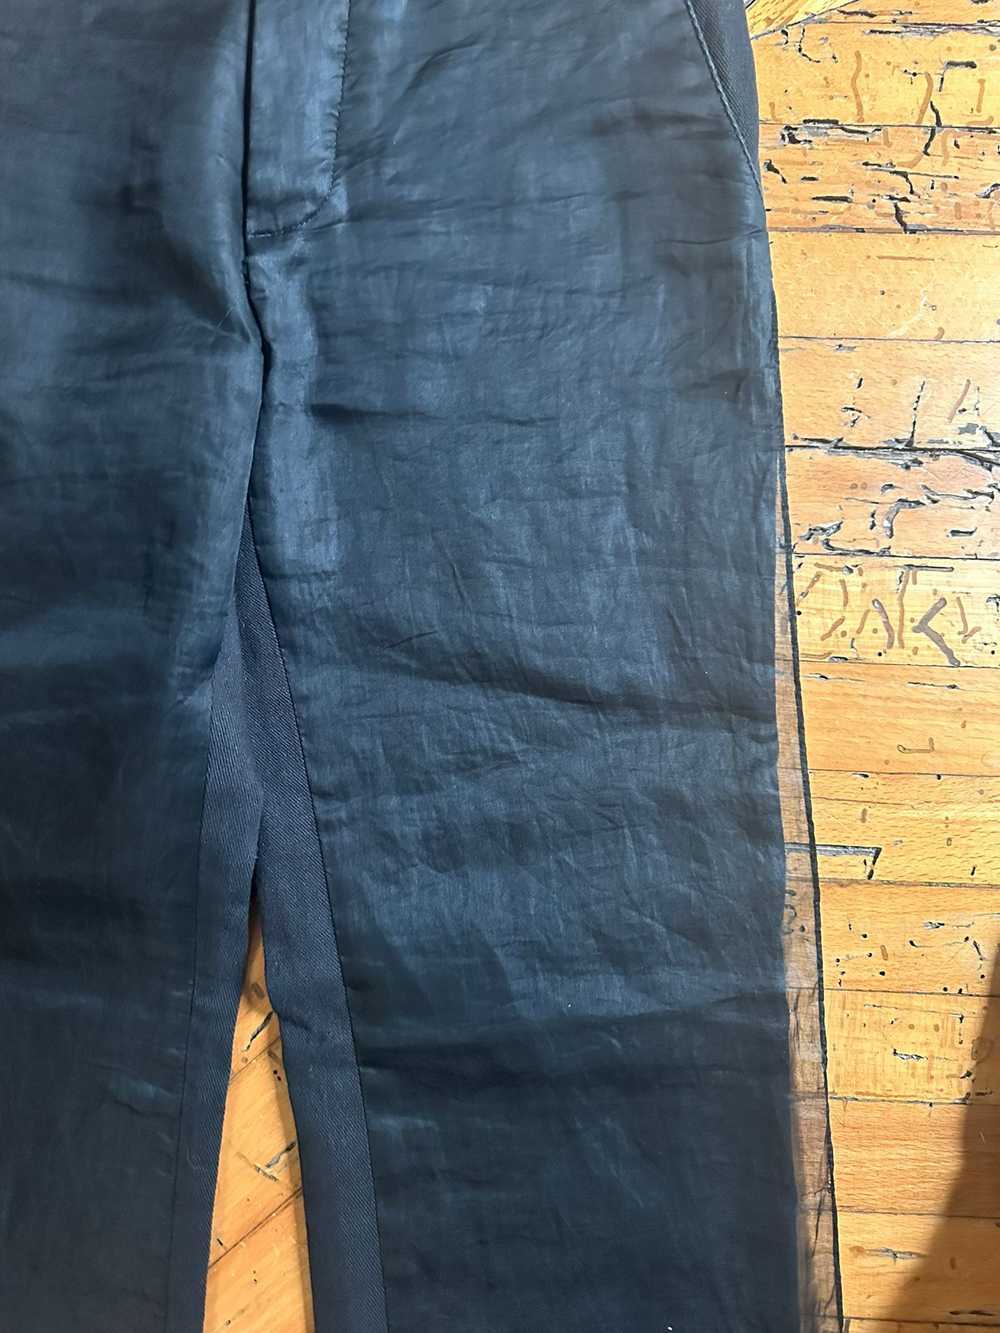 Helmut Lang AW1997 Layered Chiffon Jeans - image 5